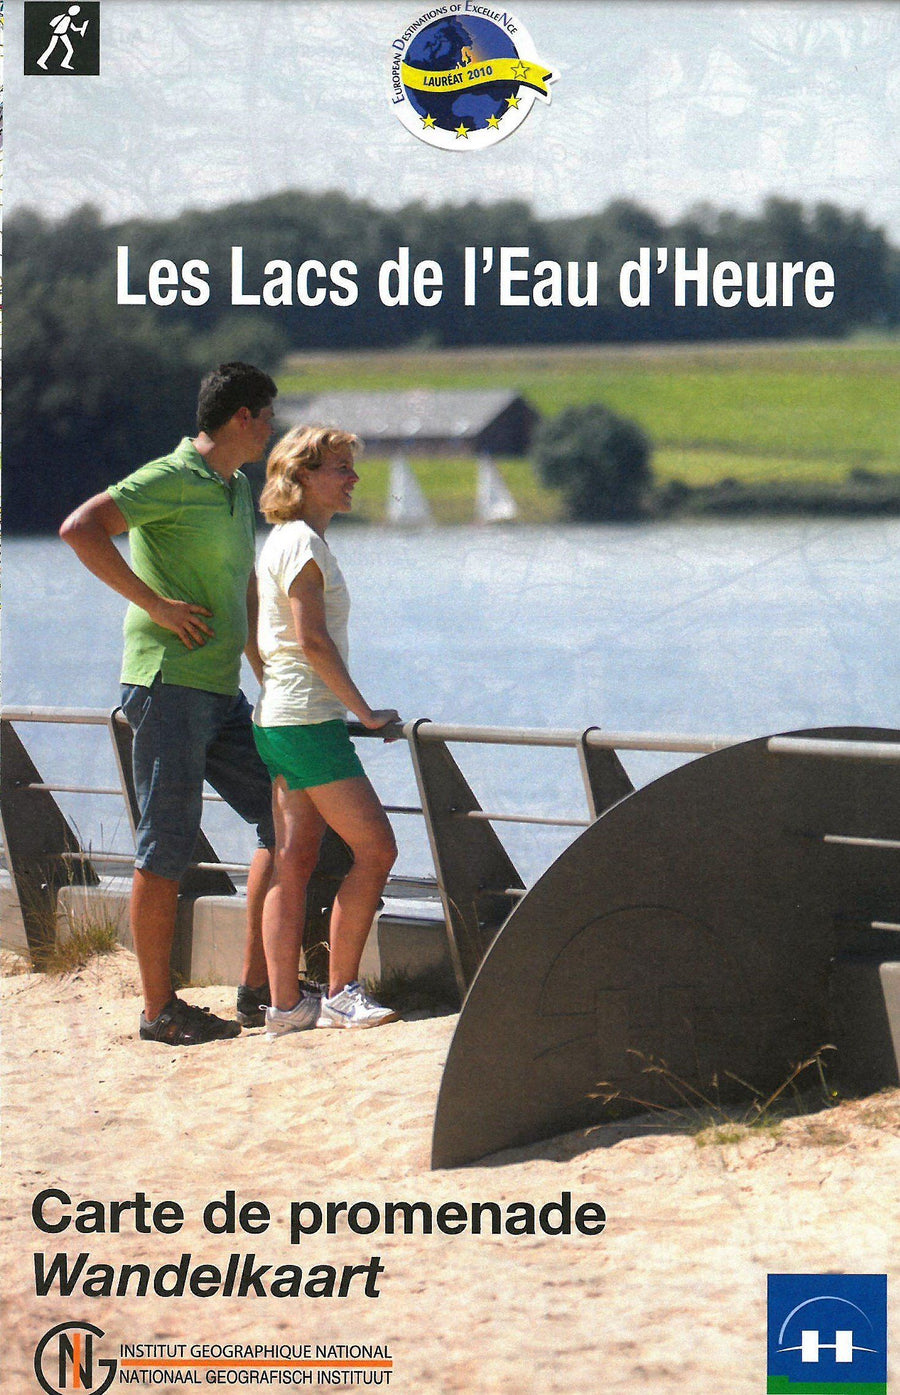 Carte de promenades - Lacs de l'Eau d'Heure (Belgique) | NGI carte pliée IGN Belgique 